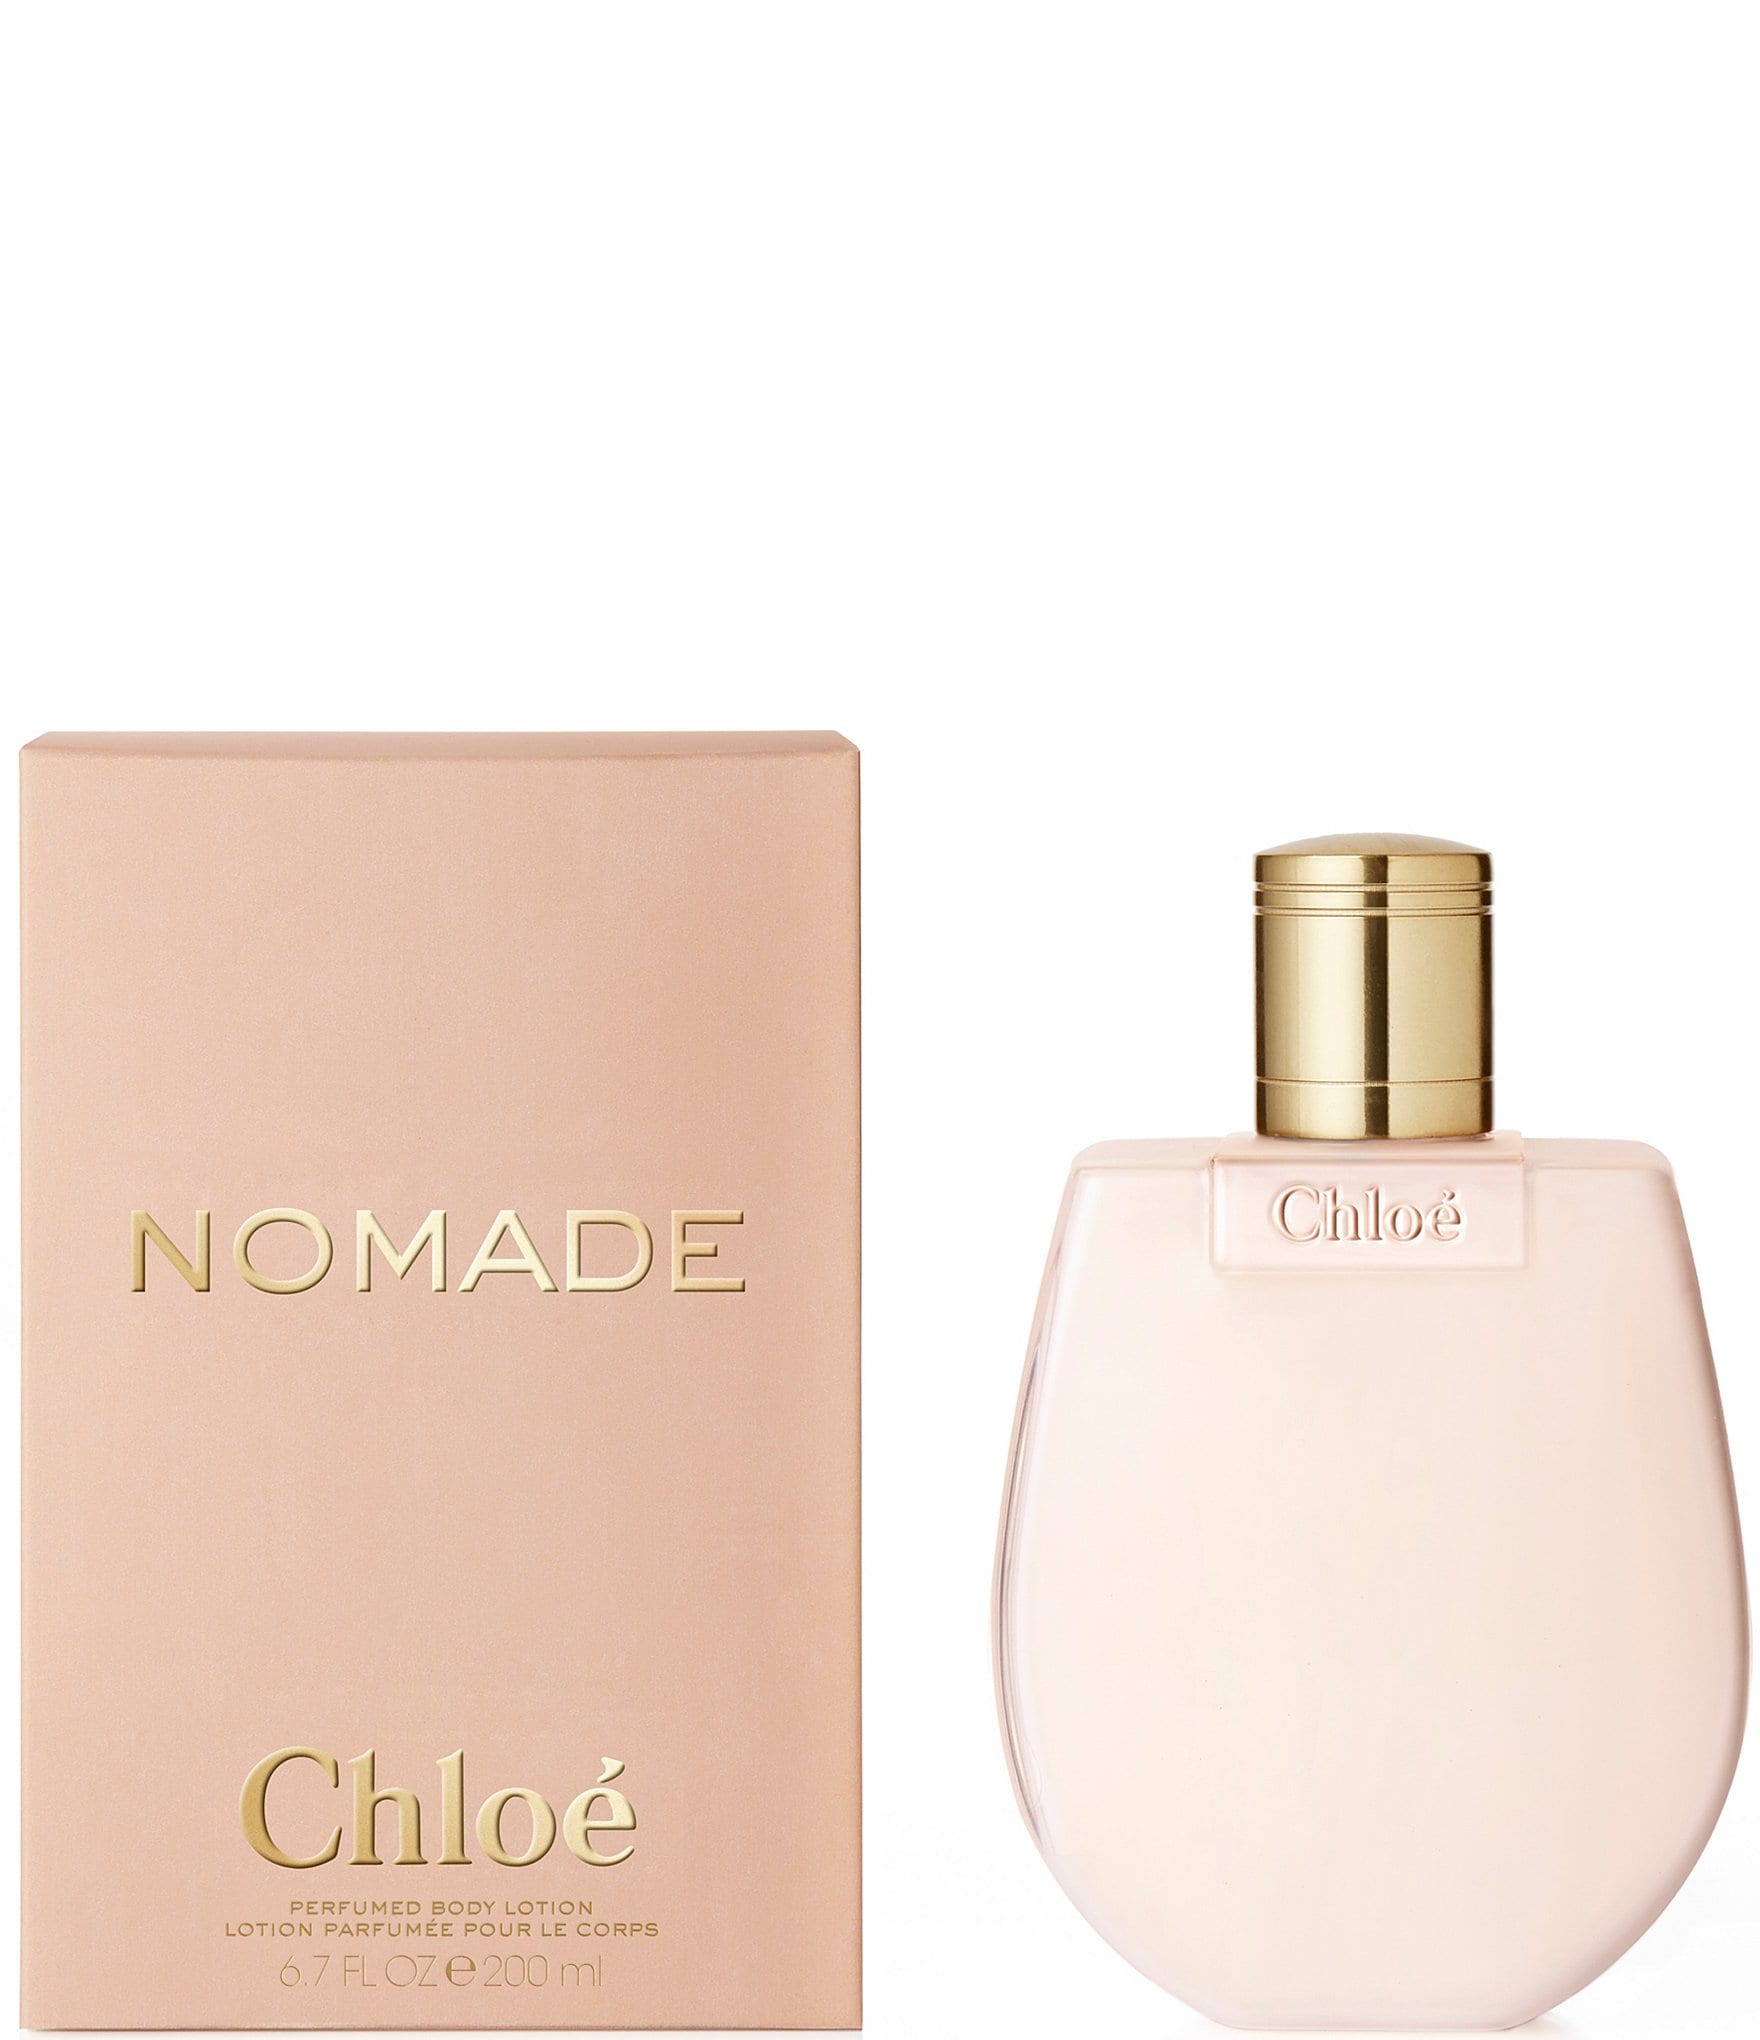 Chloe Nomade by Chloe - Buy online